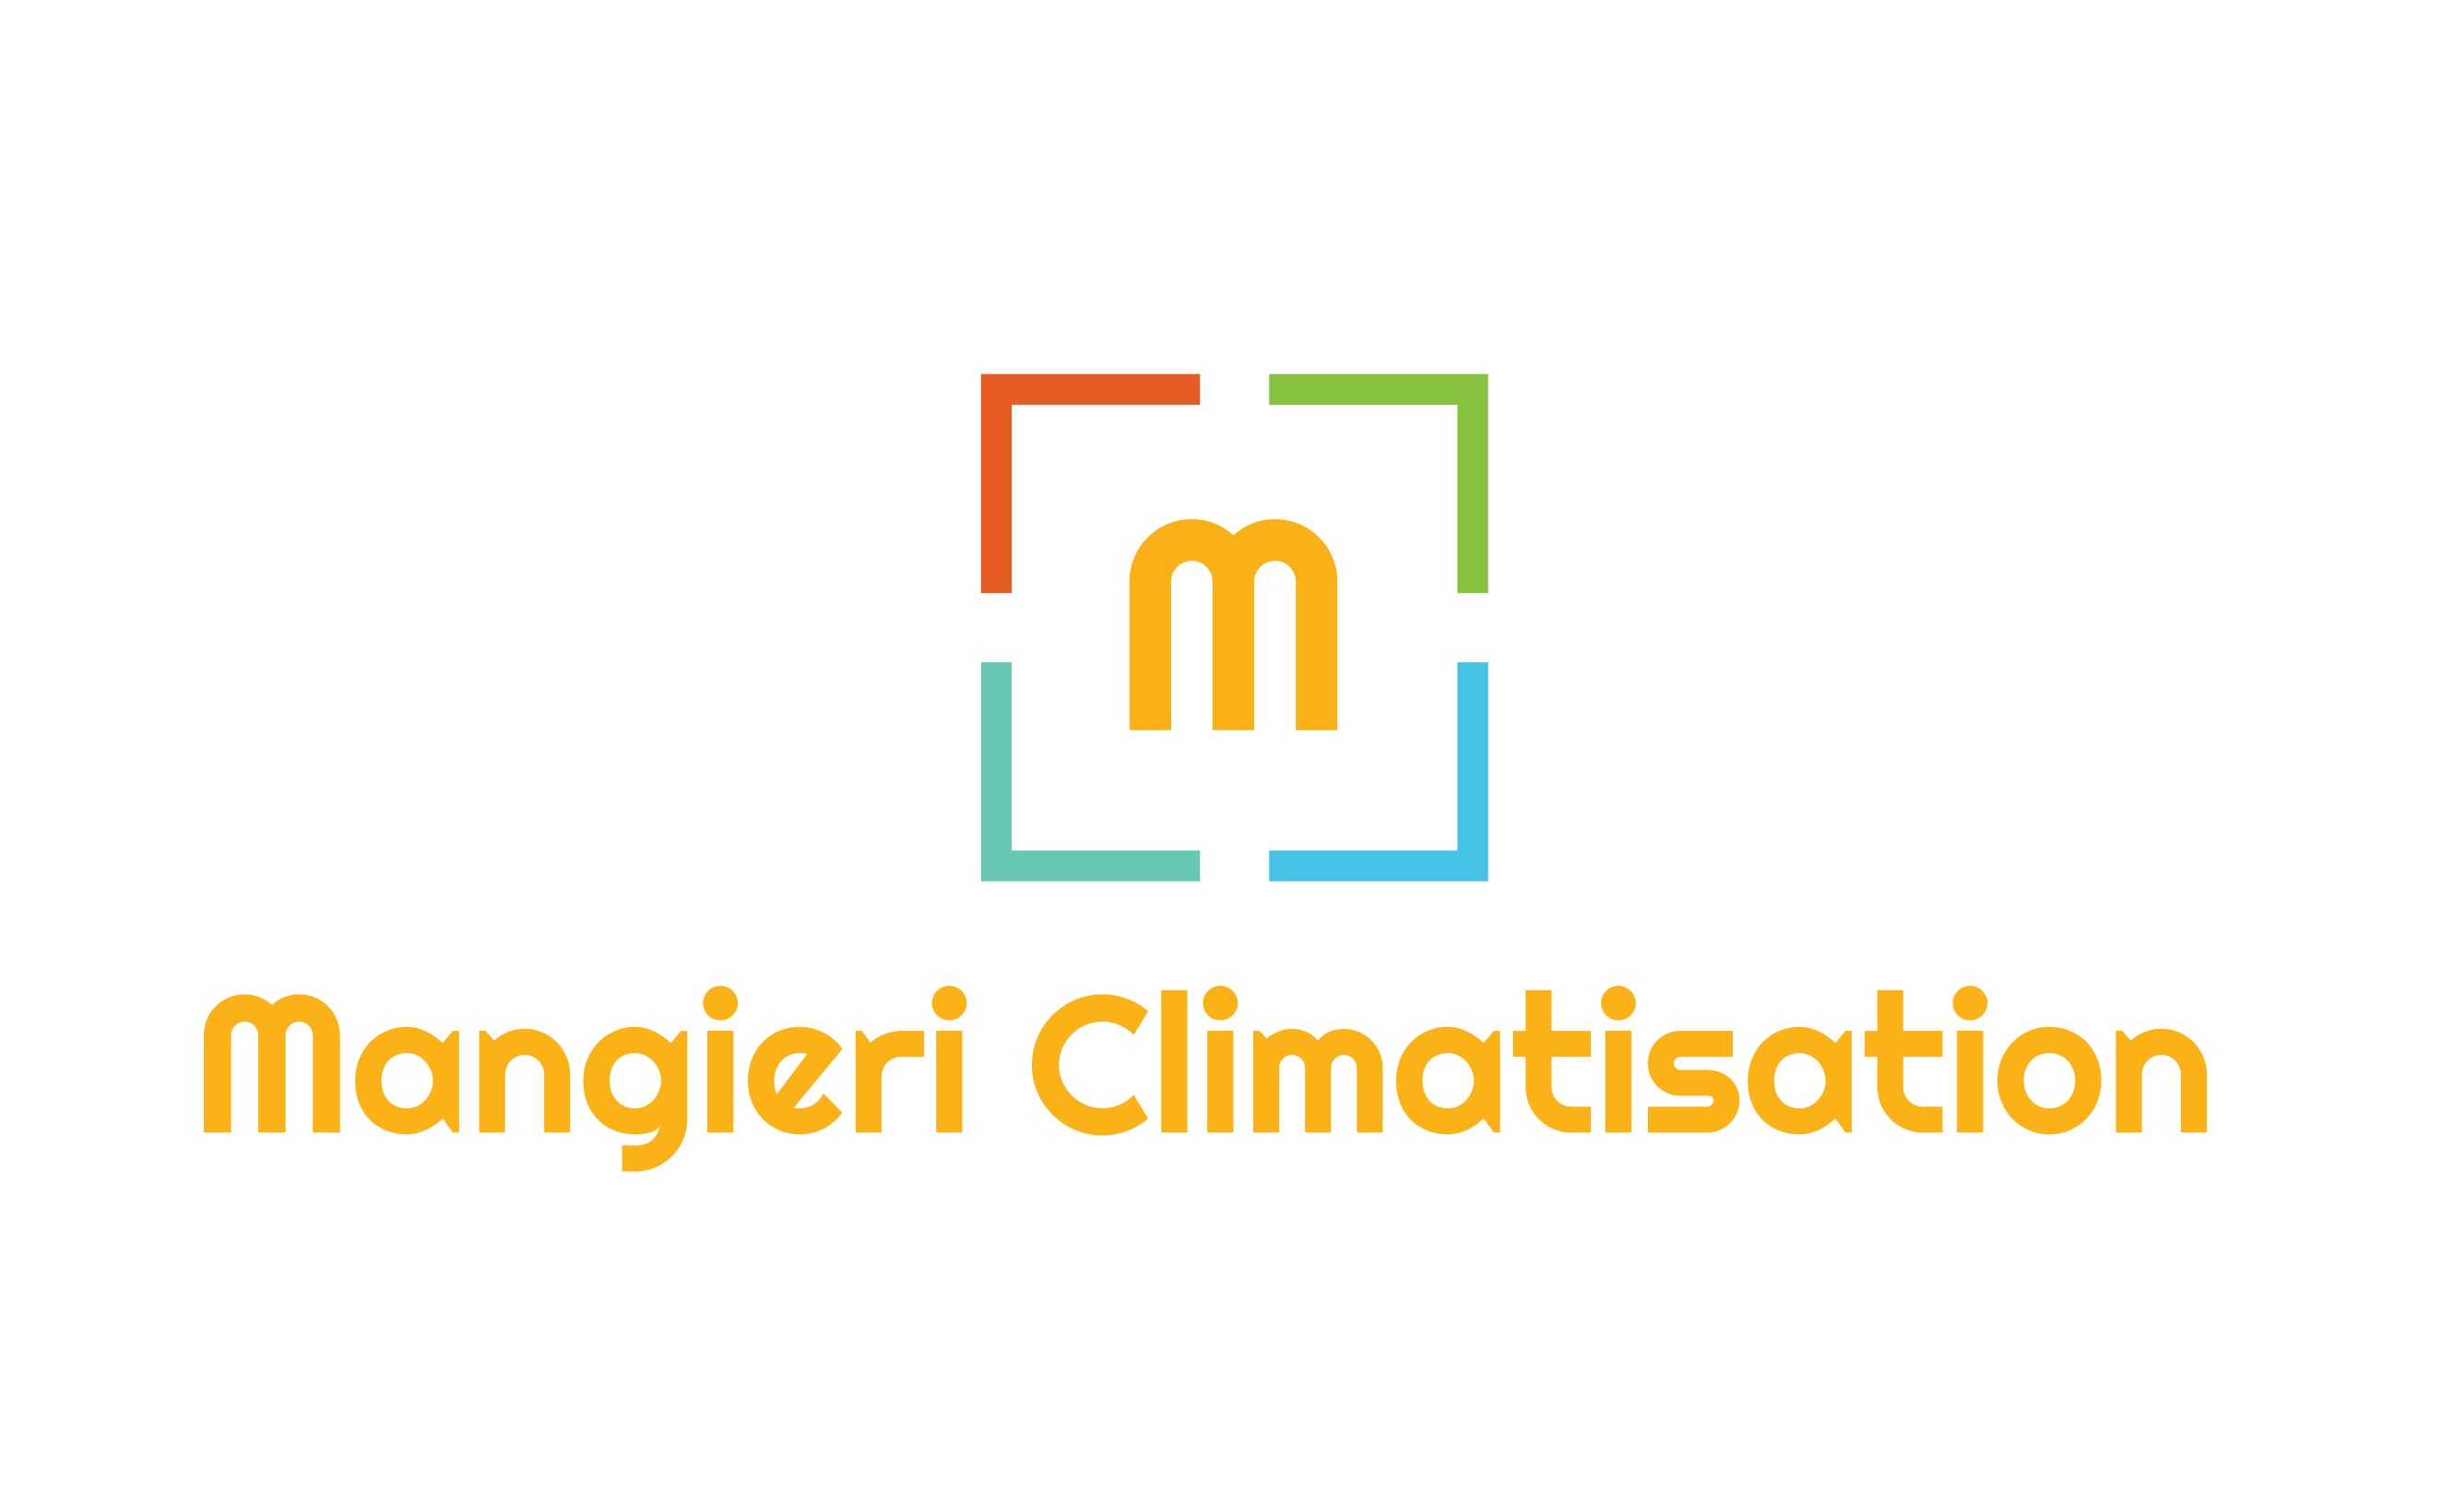 Mangieri Climatisation